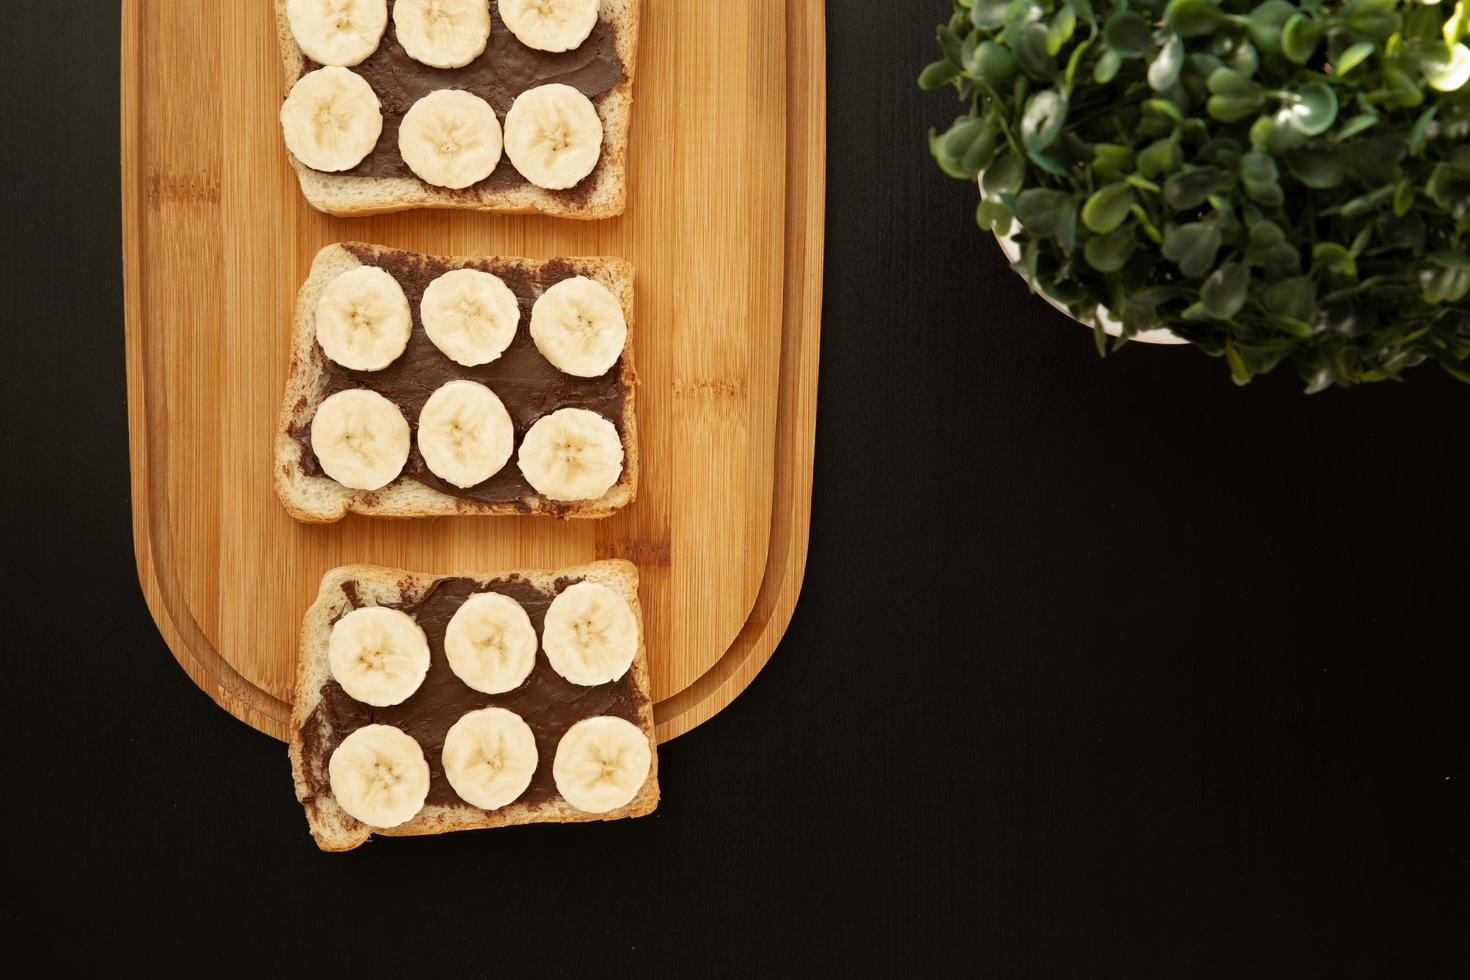 Trois toasts de pain blanc à la banane enduits de beurre au chocolat sur une planche à découper sur un fond sombre photo